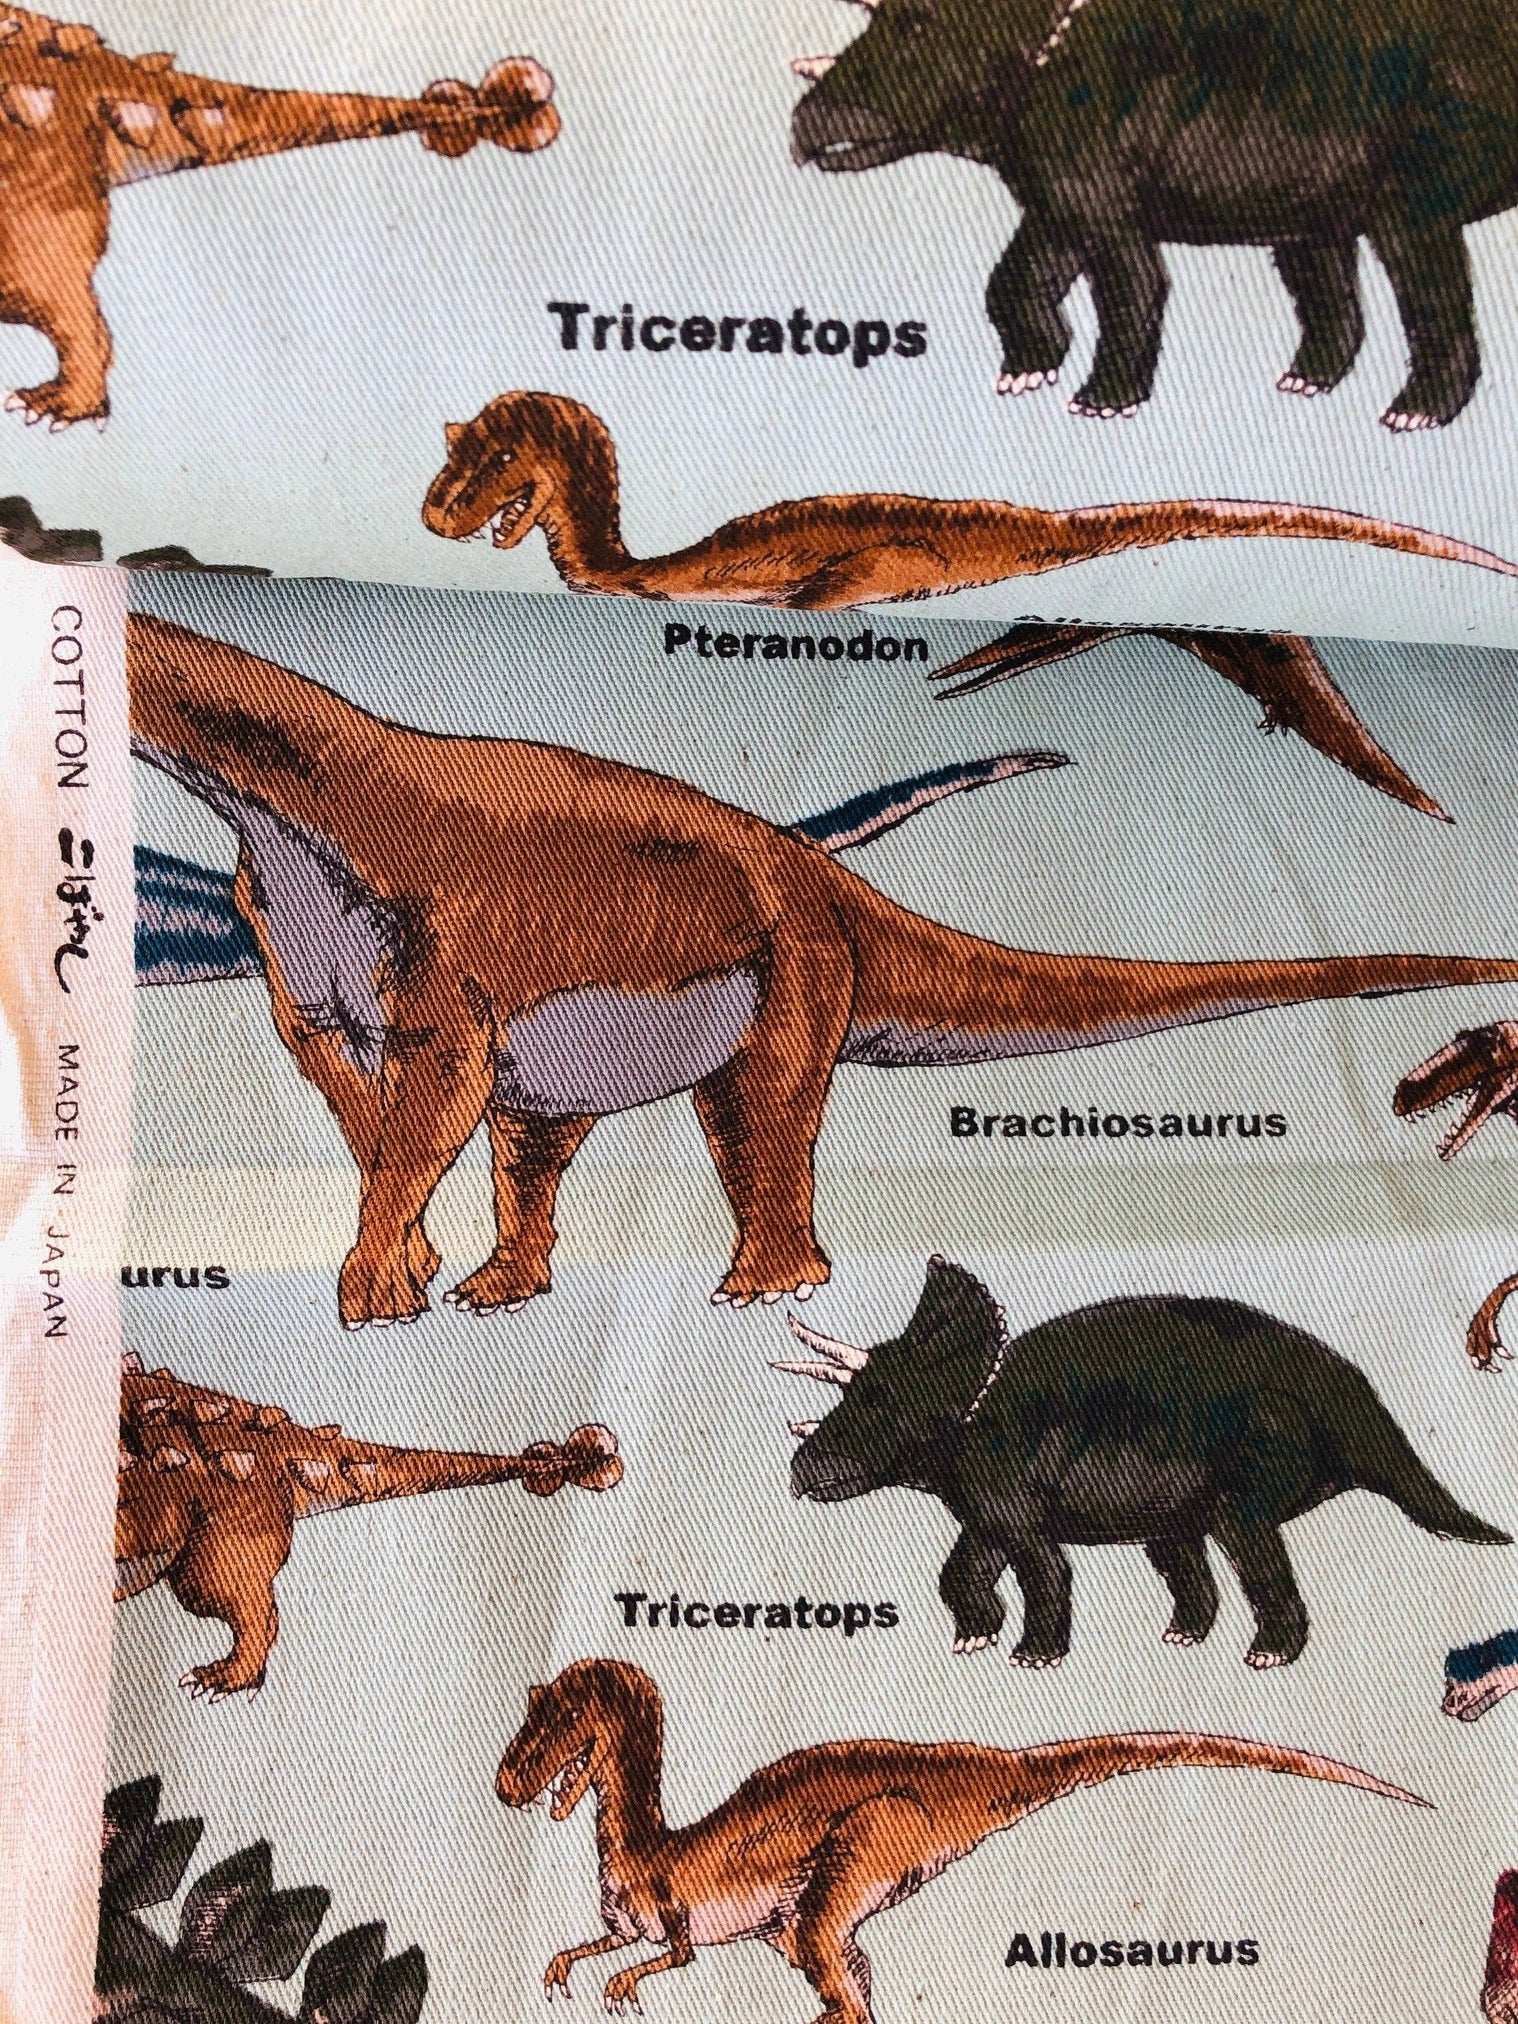 Dinosaur Fabric-Dino-Dinosaur-Japanese fabric-Cotton Twill